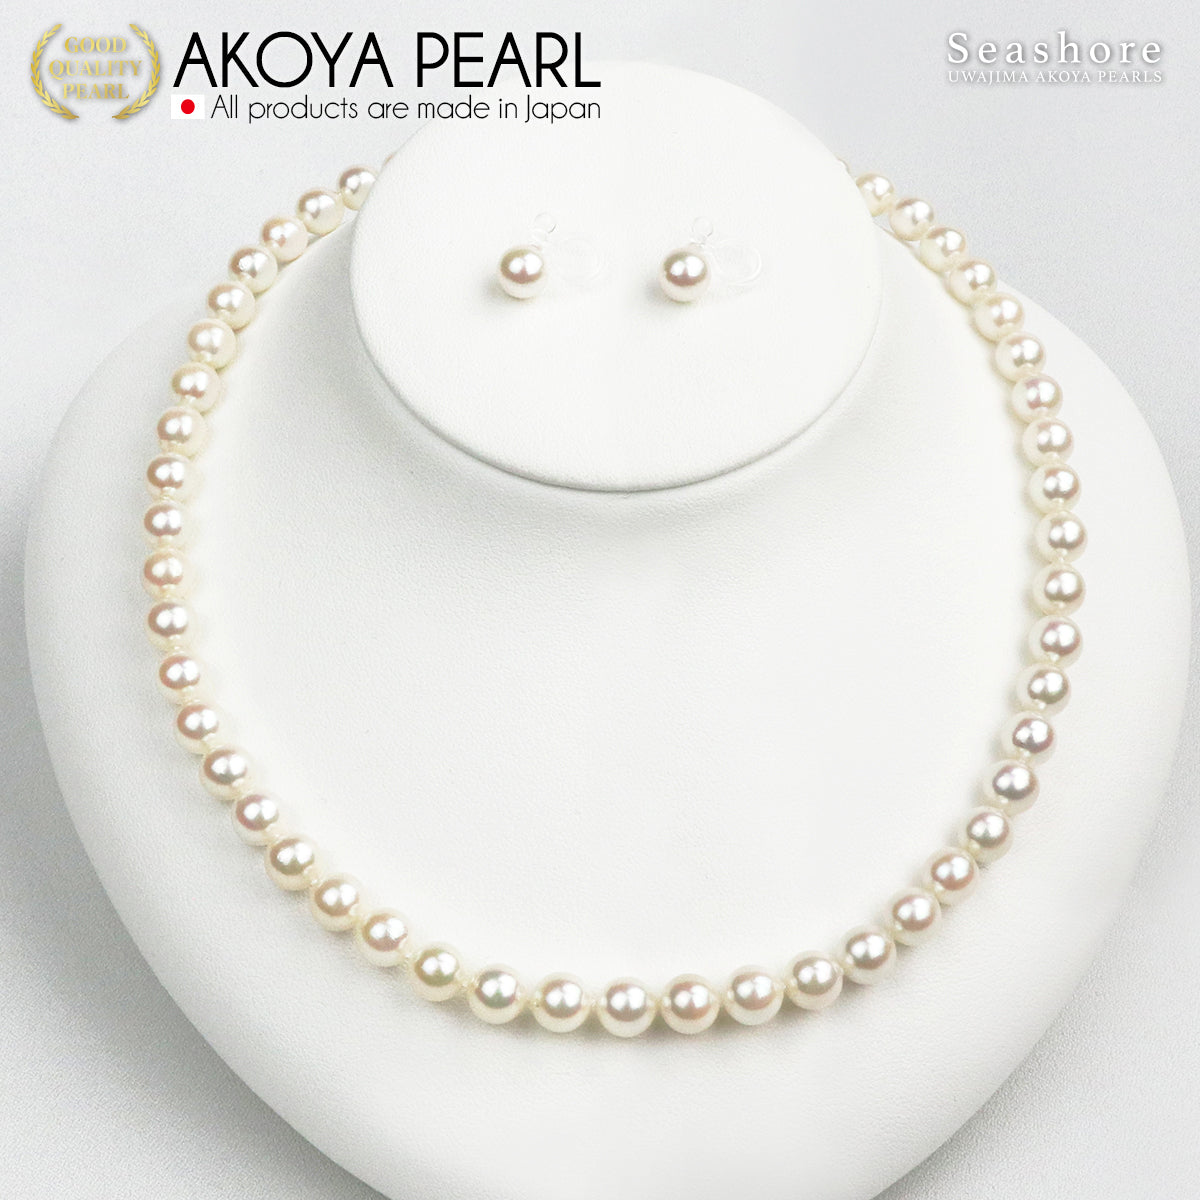 [金属过敏兼容] Akoya 珍珠正装项链 2 件套 [8.0-8.5 毫米]（耳环/非穿孔耳环）正装套装带真品证书和收纳盒